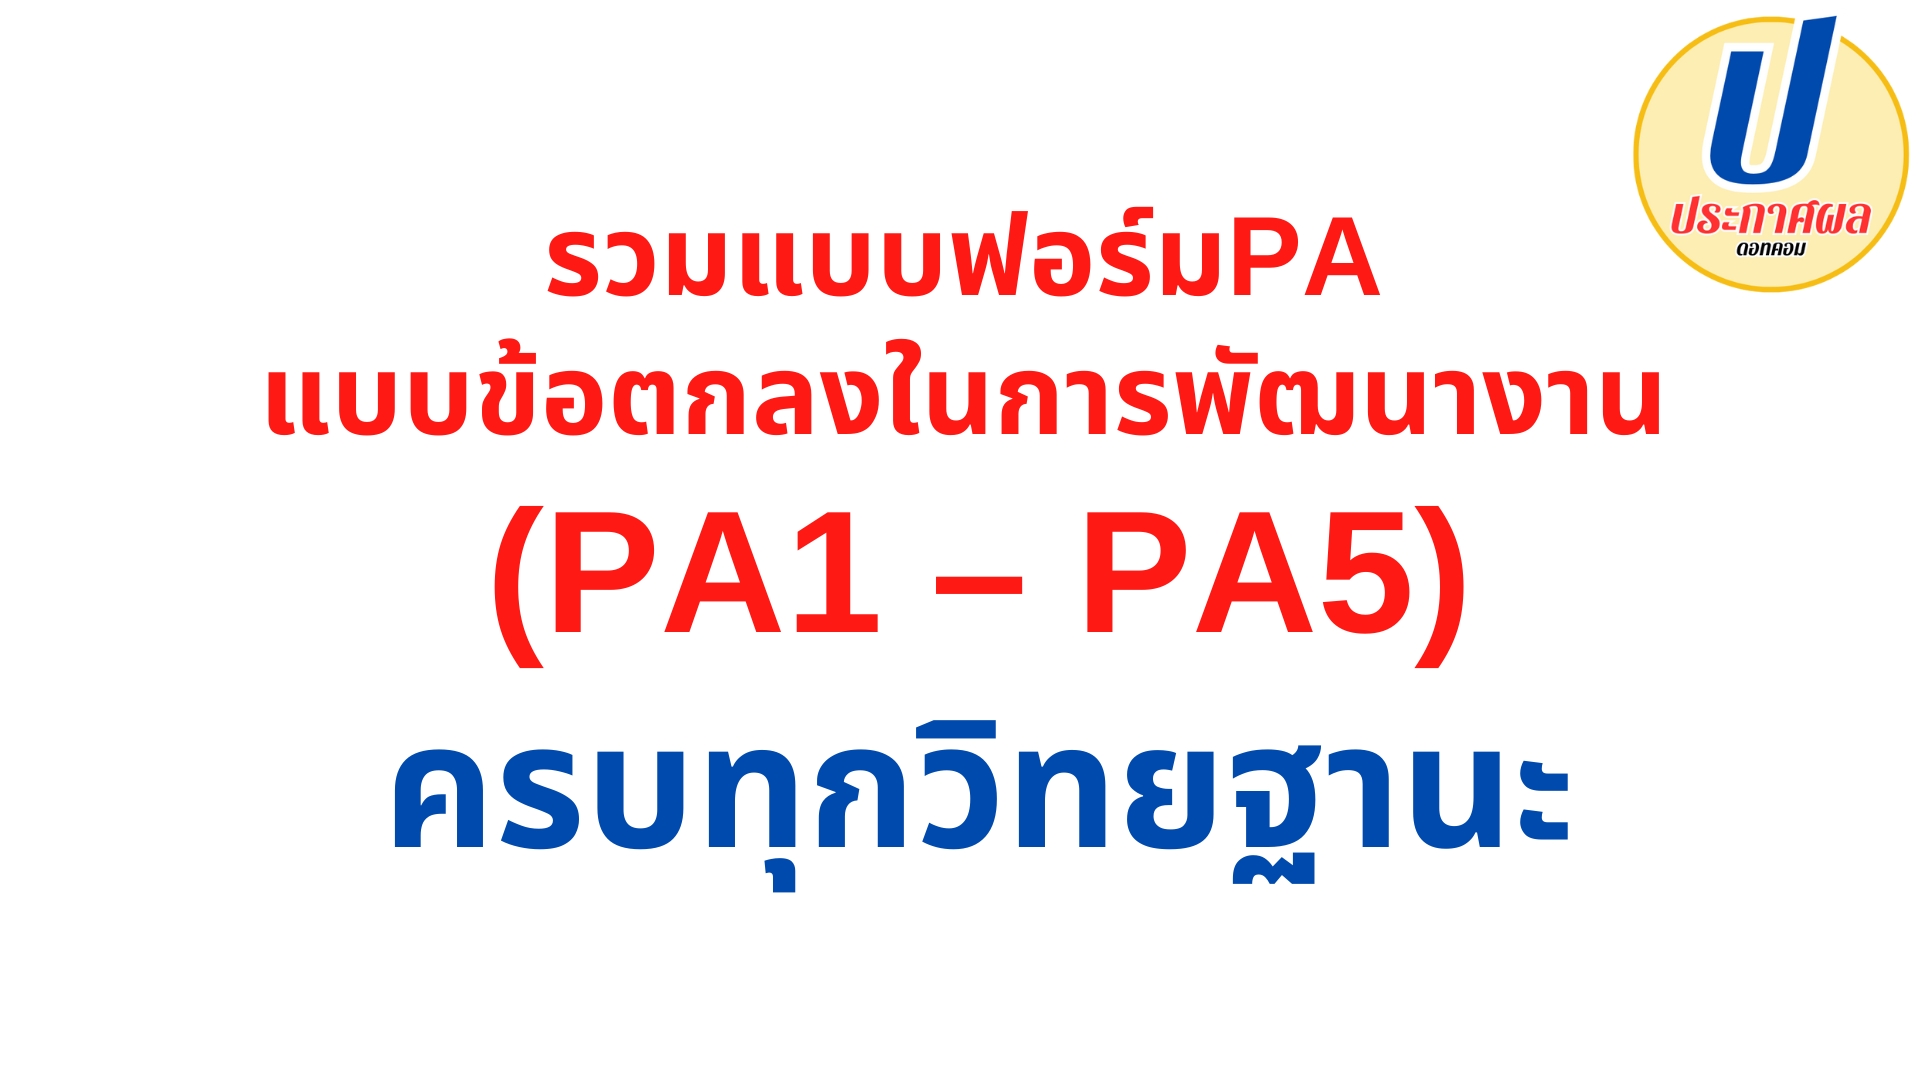 รวมแบบฟอร์มpa แบบข้อตกลงในการพัฒนางาน PA1 PA2 PA3 PA4 PA5 สำหรับข้าราชการครูและบุคลากรทางการศึกษา ทุกวิทยฐานะ ไฟล์ doc & word (วpa)